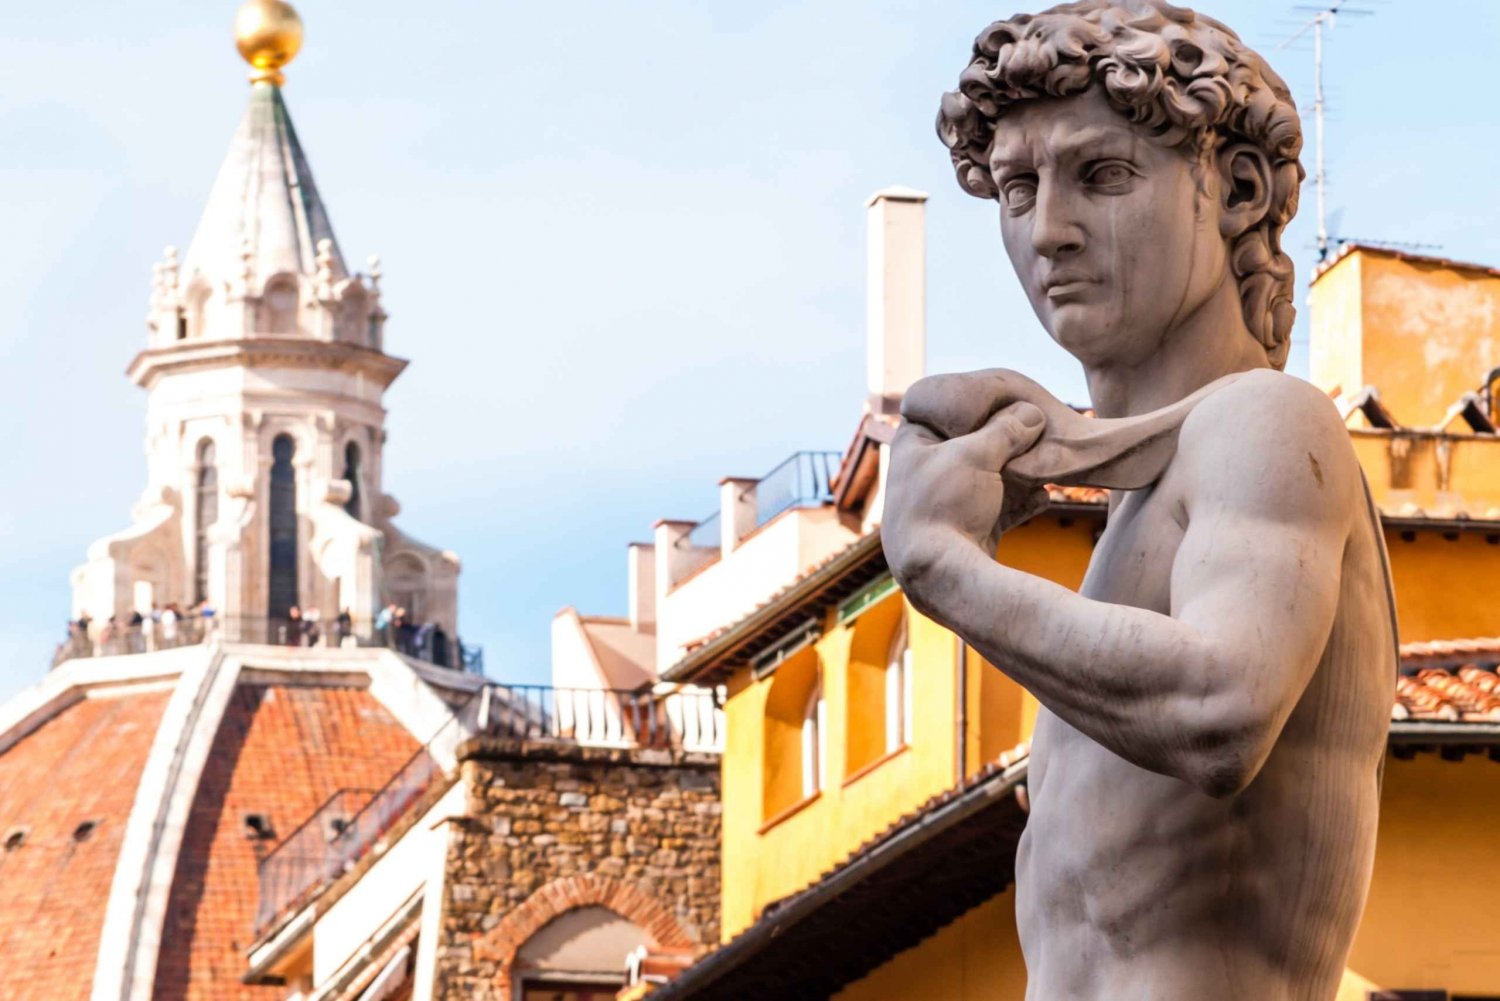 Florens: Davids guidade rundtur i Accademia-galleriet